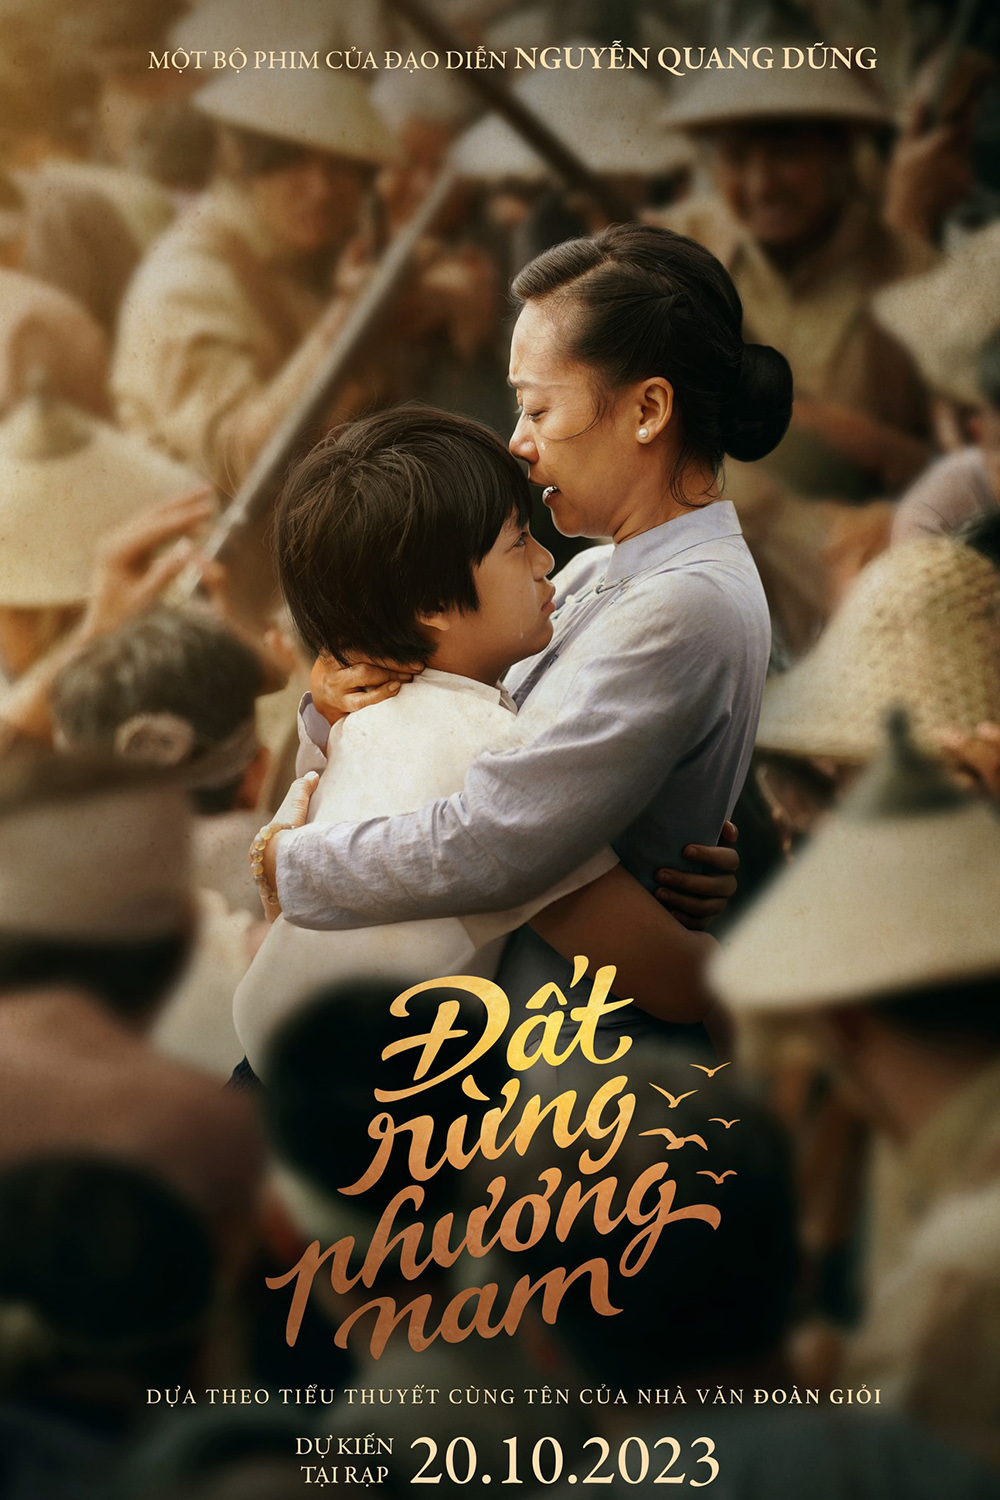 Đạo diễn Nguyễn Quang Dũng phim mới: Đất rừng phương Nam – Song of the South (2023)